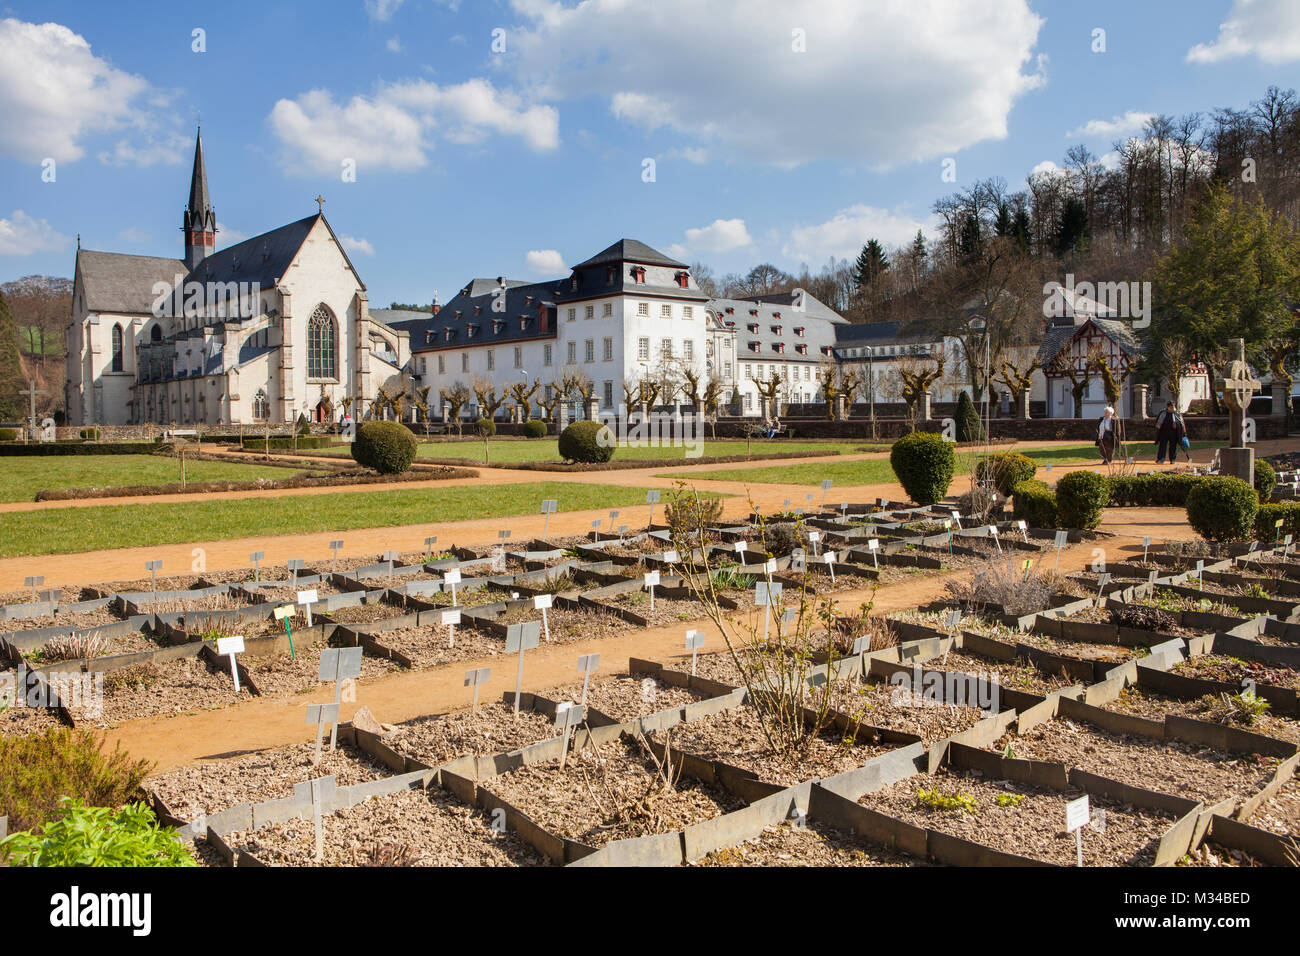 Plantes médicinales, monastère cistercien de l'abbaye de Marienstatt, Streithausen, Rhénanie-Palatinat, Allemagne, Europe Banque D'Images